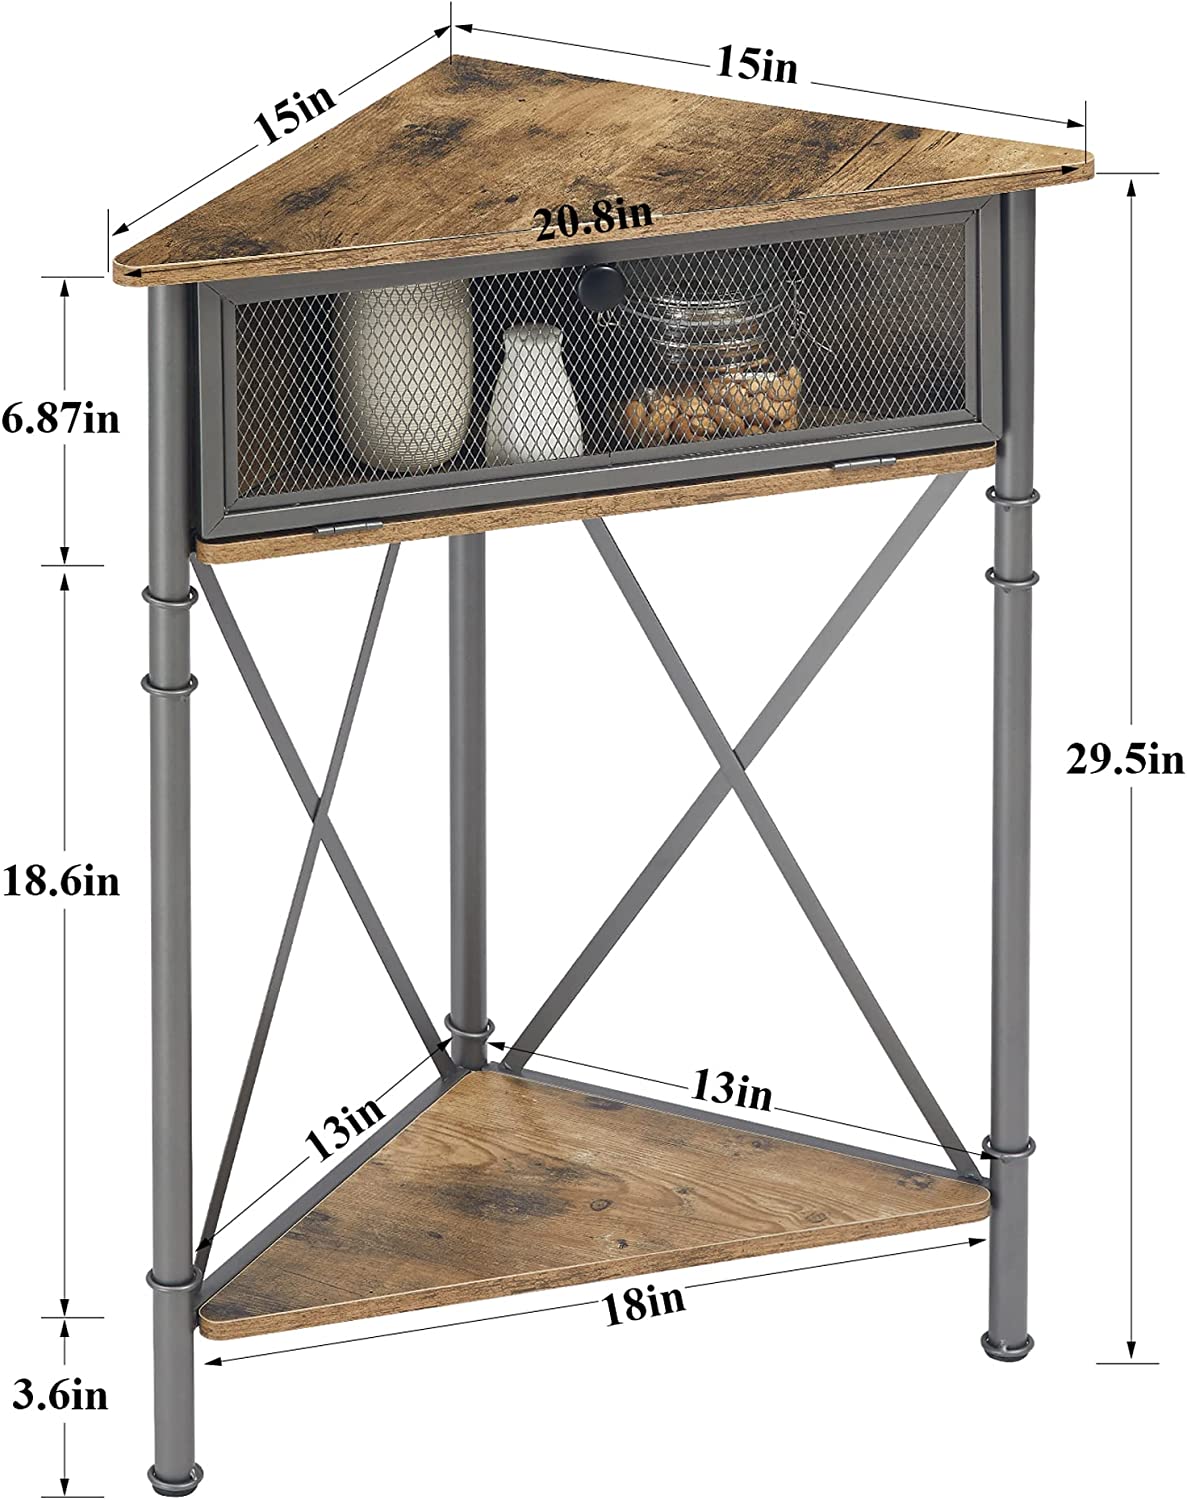 VECELO Corner Table/Cabinet/Organizer with Flip Door